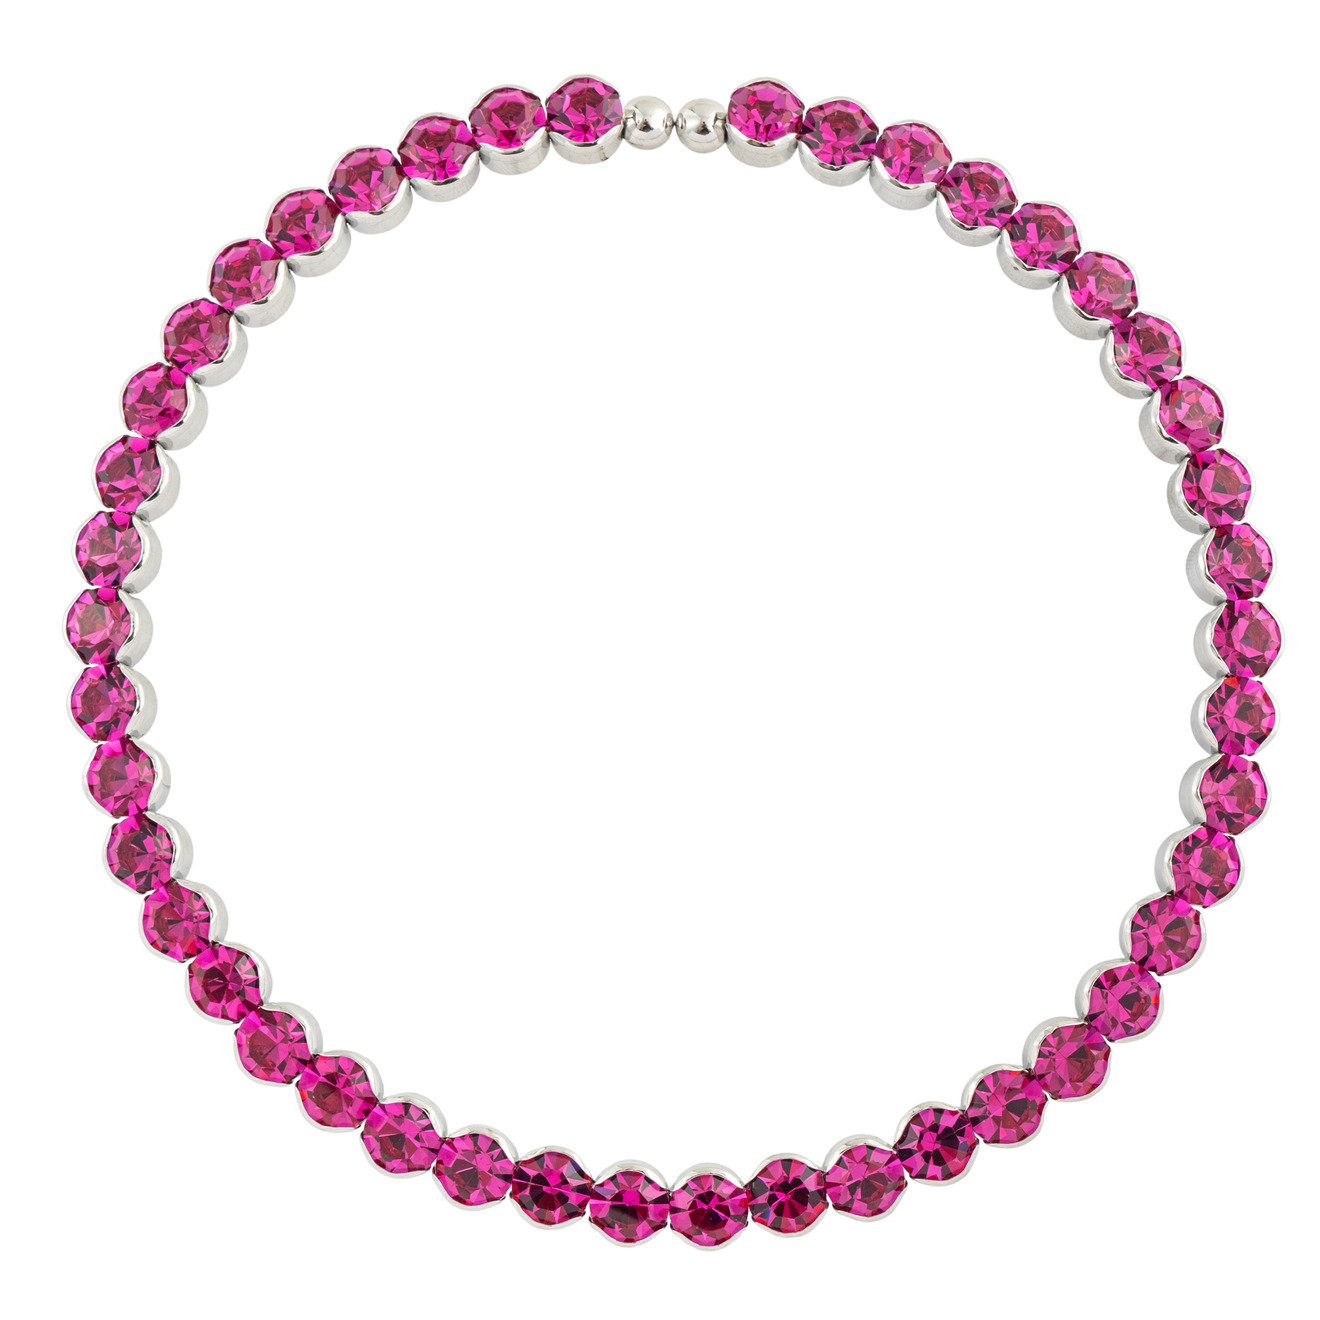 Herald Percy Ярко-розовый чокер с круглыми кристаллами herald percy ярко розовый чокер с круглыми кристаллами